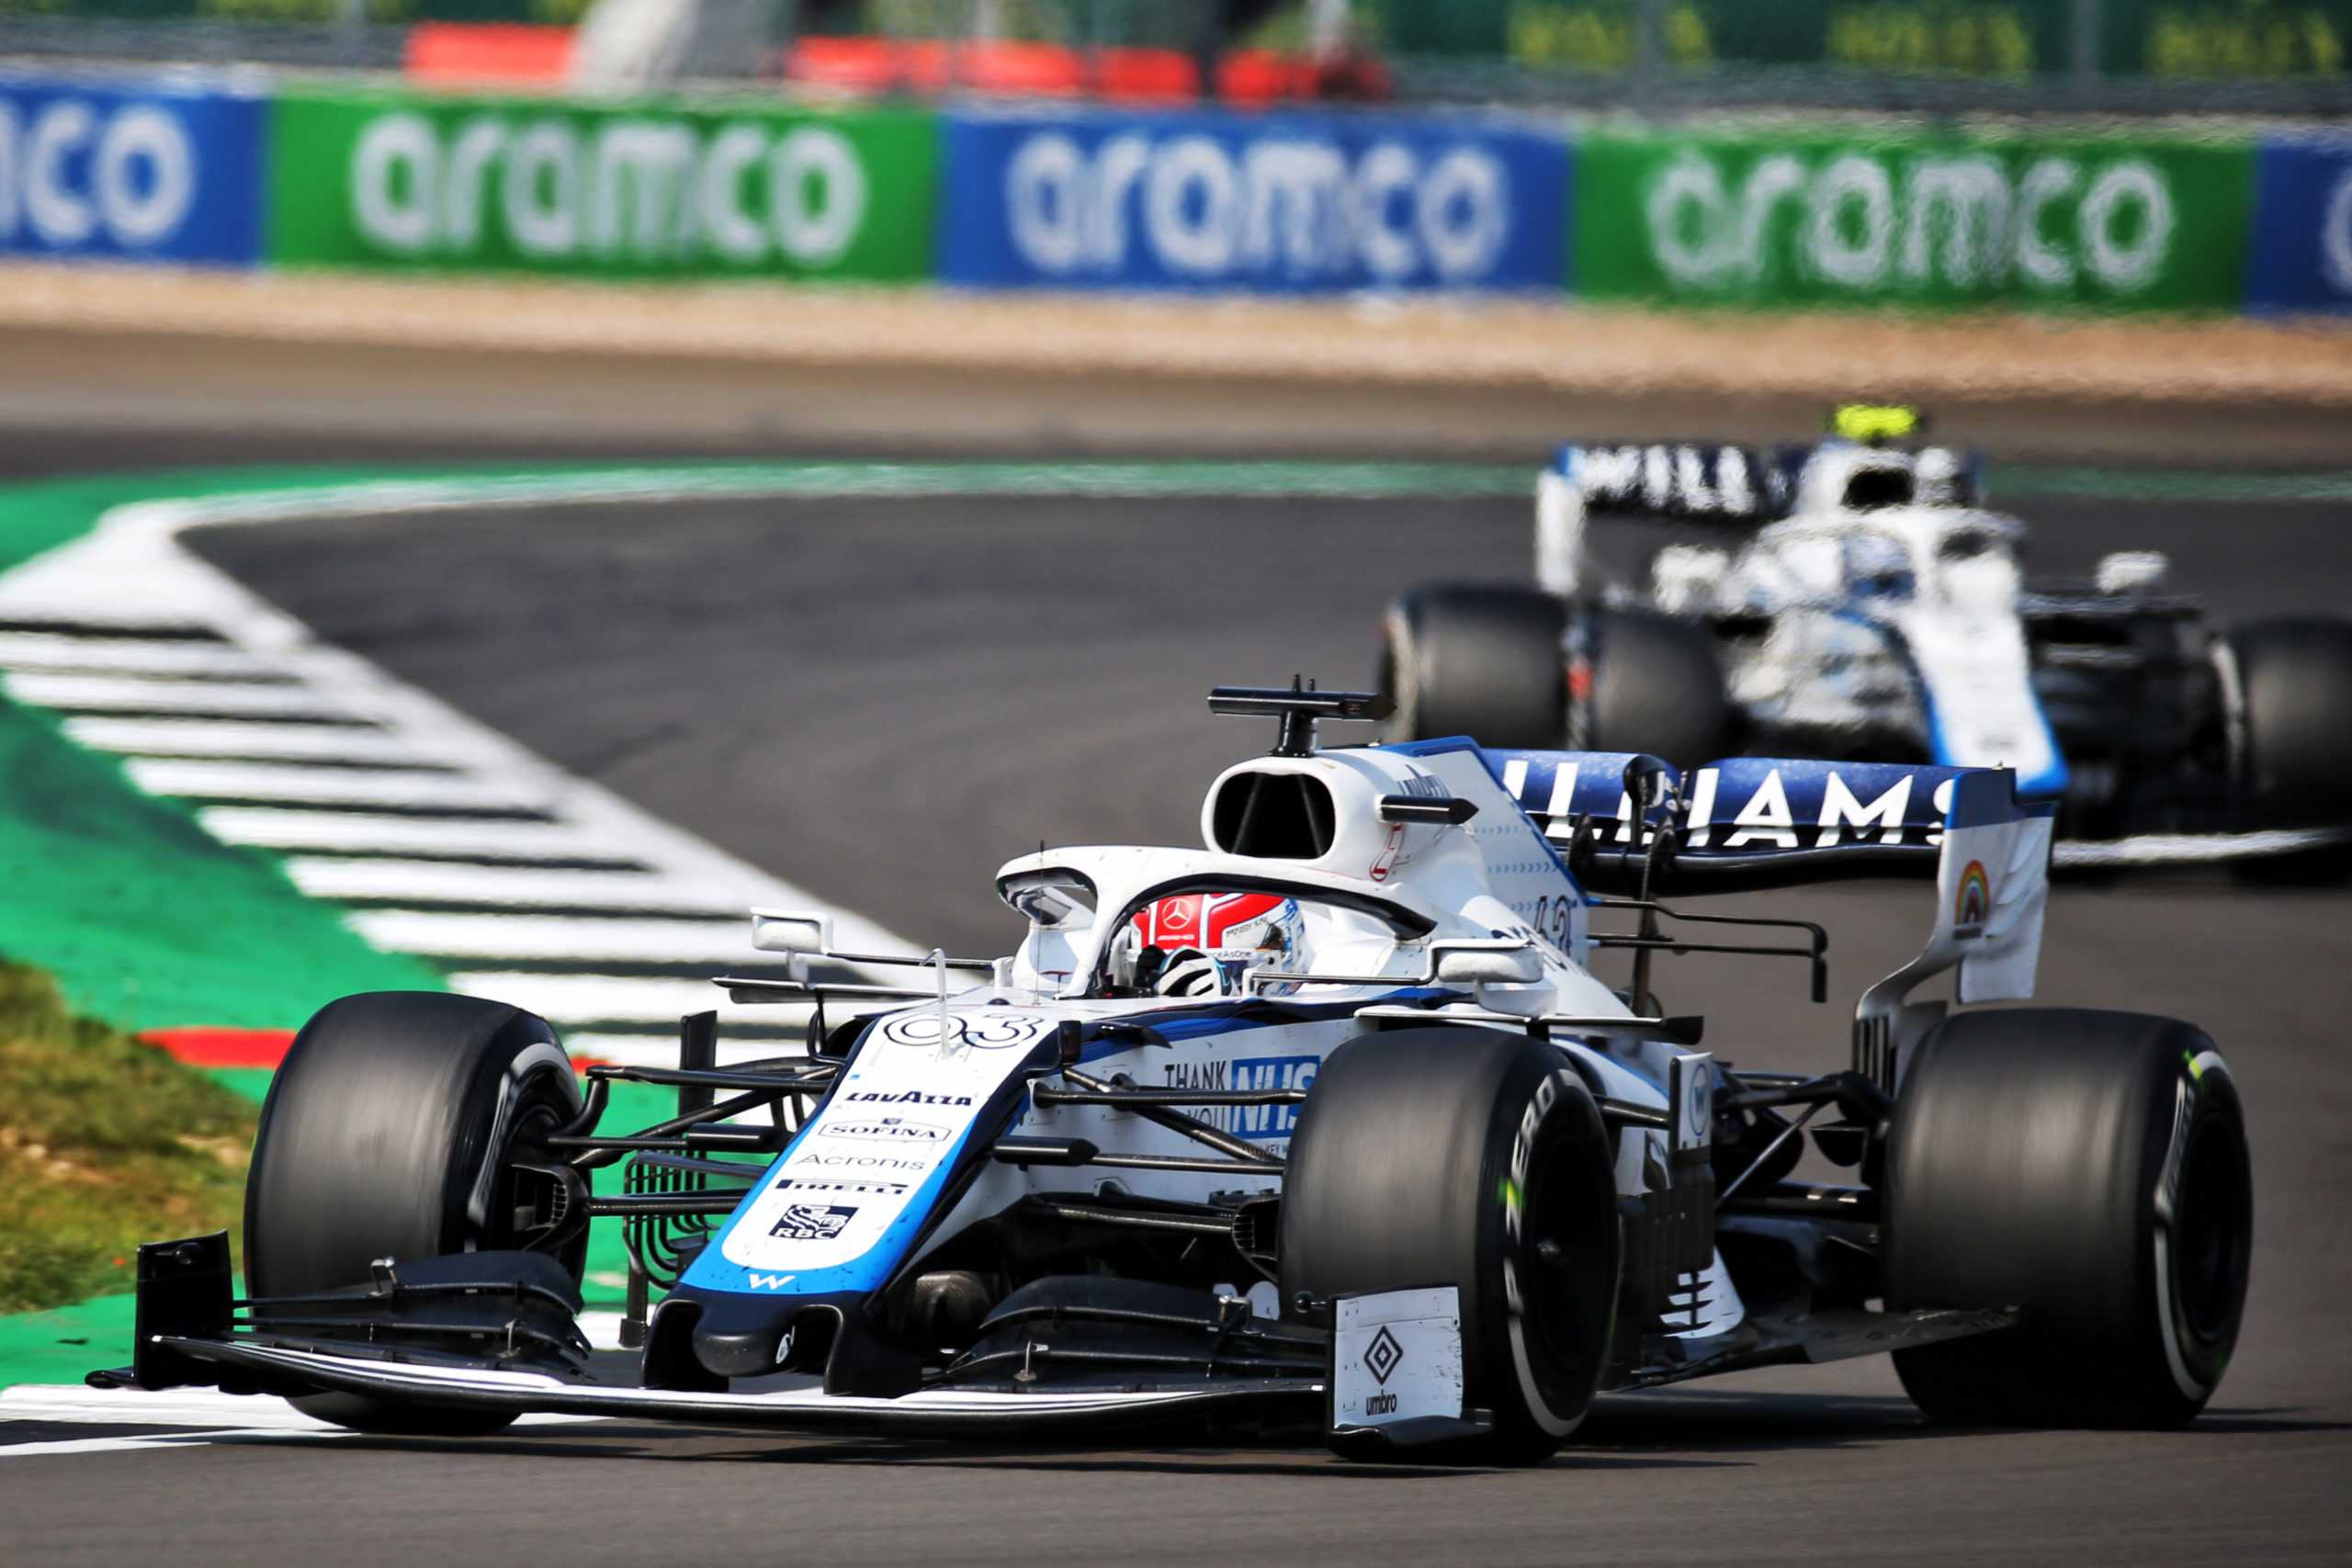 Williams F1: L'équipe annonce de nouveaux membres au conseil d'administration avant la sortie de la famille Williams